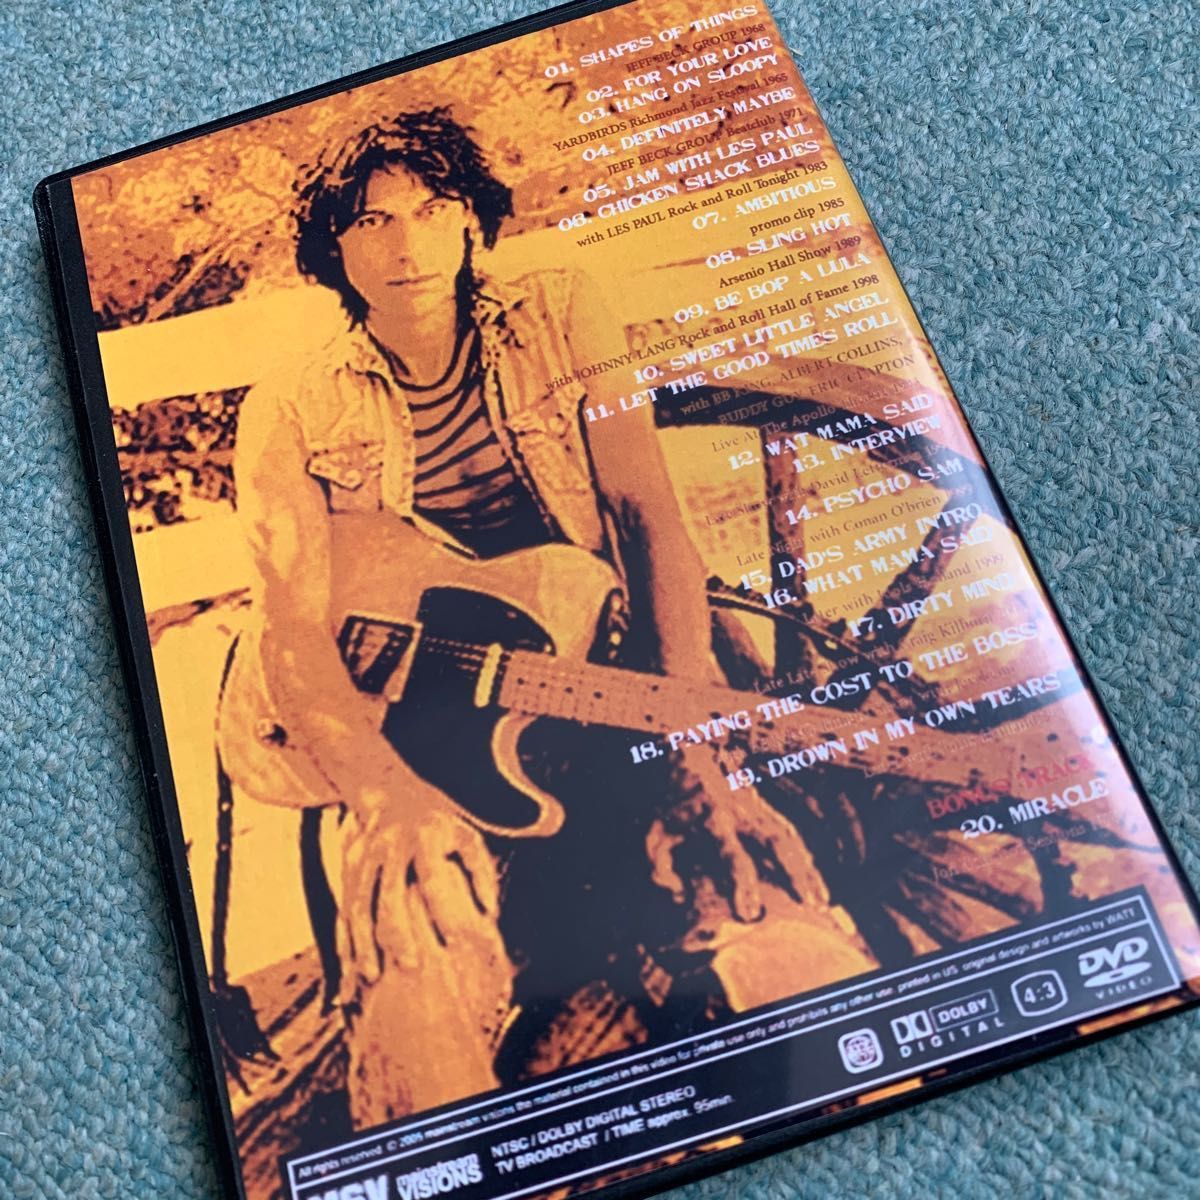 RIP Jeff Beck Videograph Vol.1&2 DVD